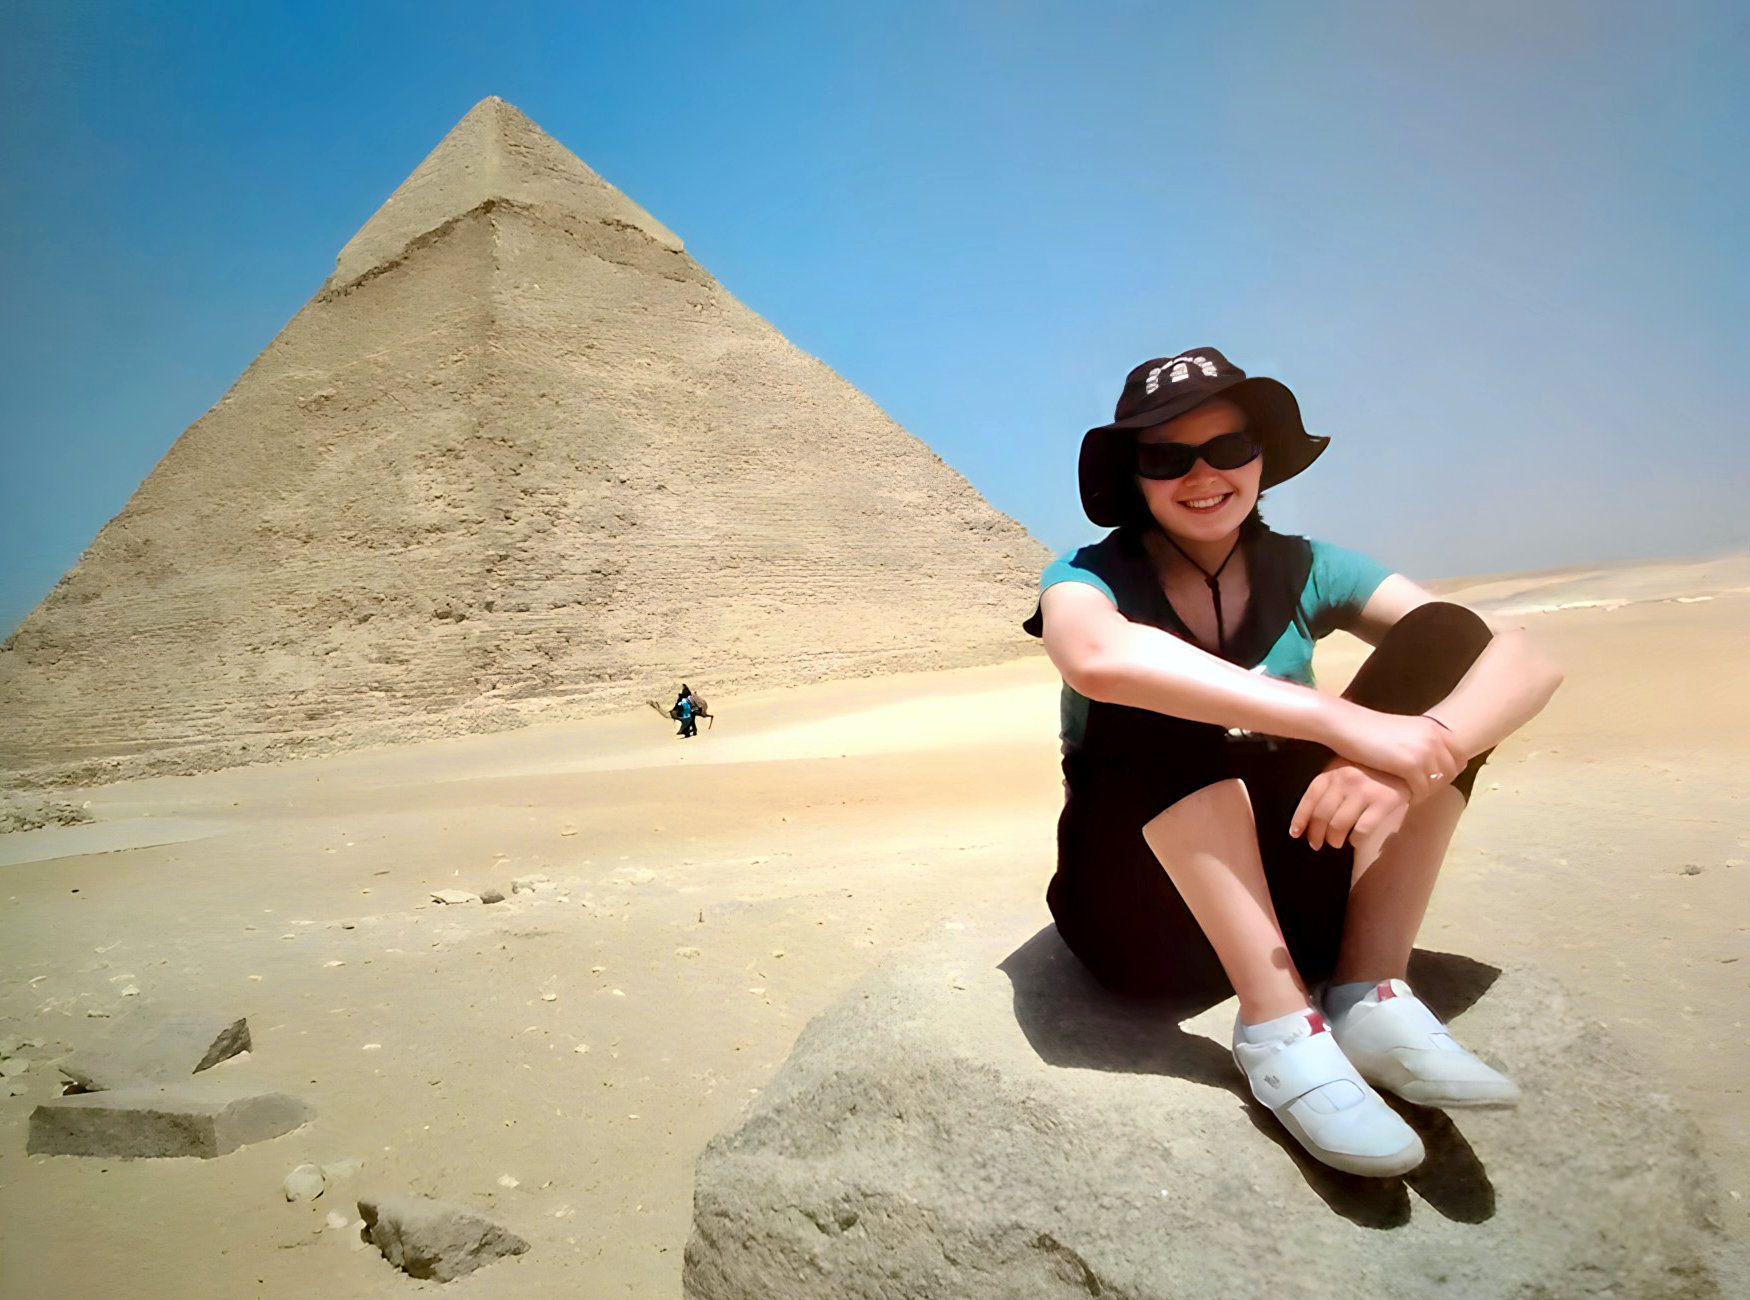 Yolanda De Iuliis at the Giza Pyramids.